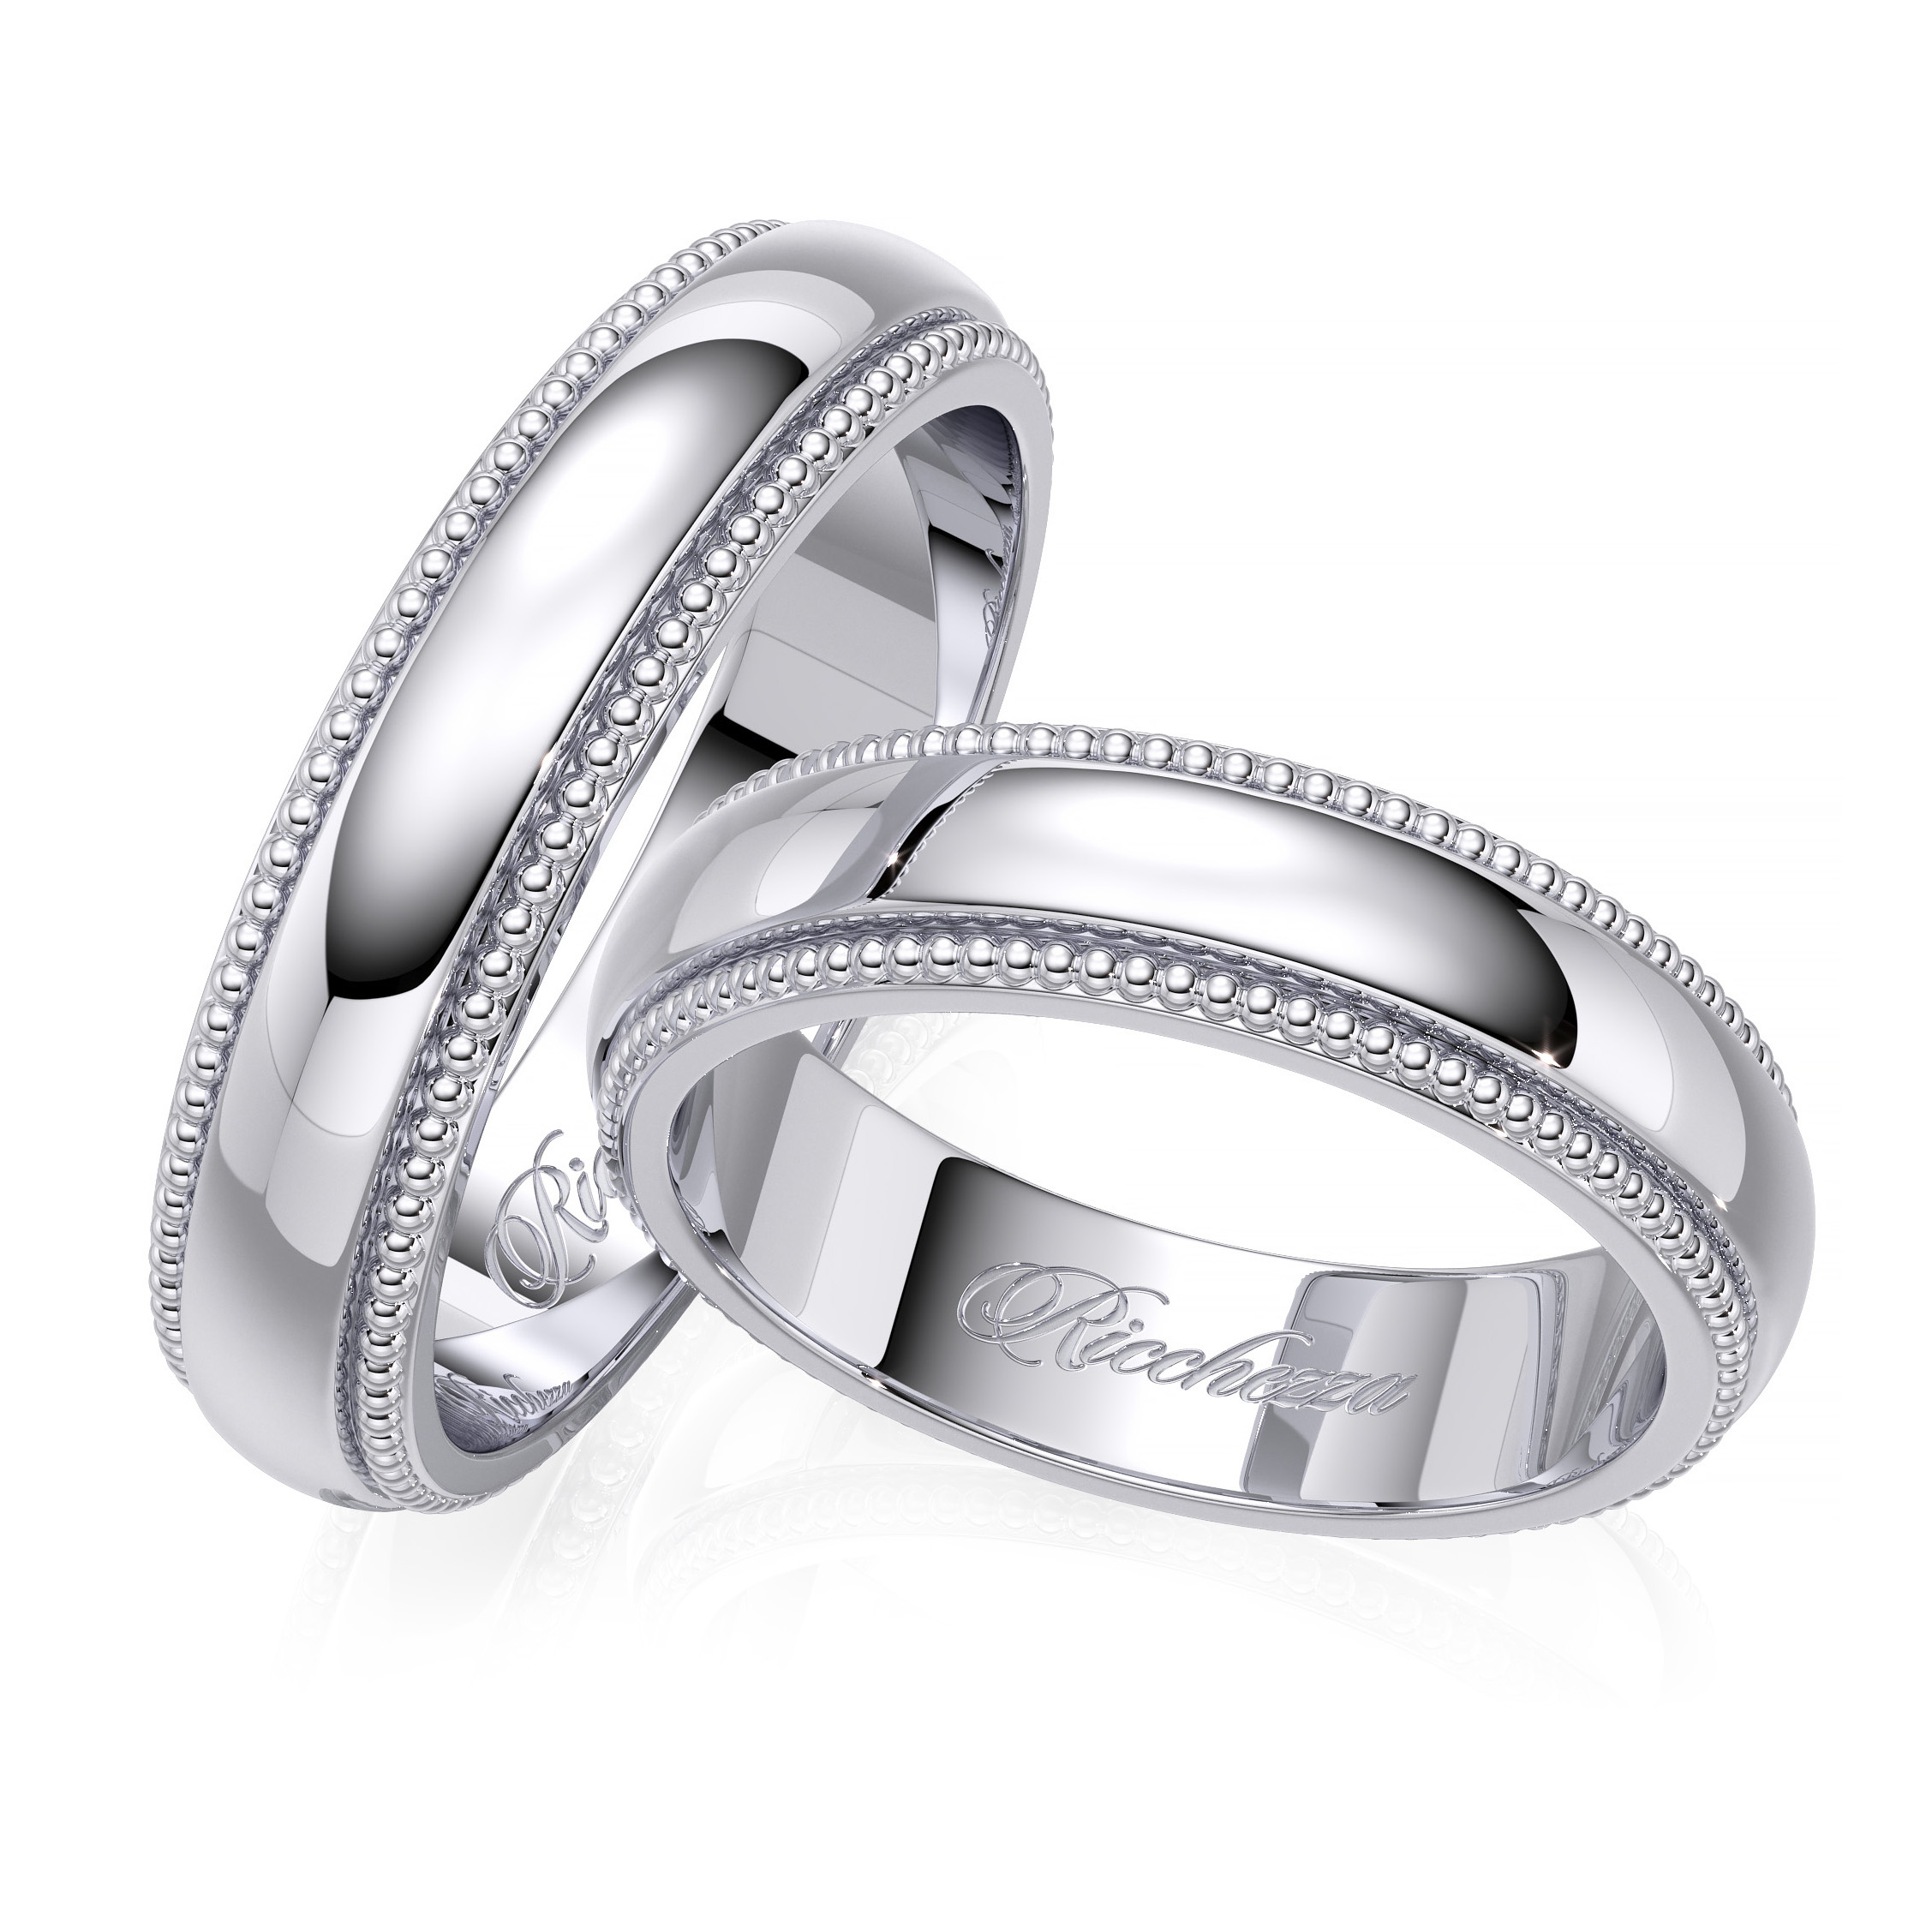 Купить обручальное серебро. Парные кольца SEREBRO 925. Обручальные кольца парные 585 Соколов. Венчальные кольца из серебра парные. Серебряные обручальные кольца 585.